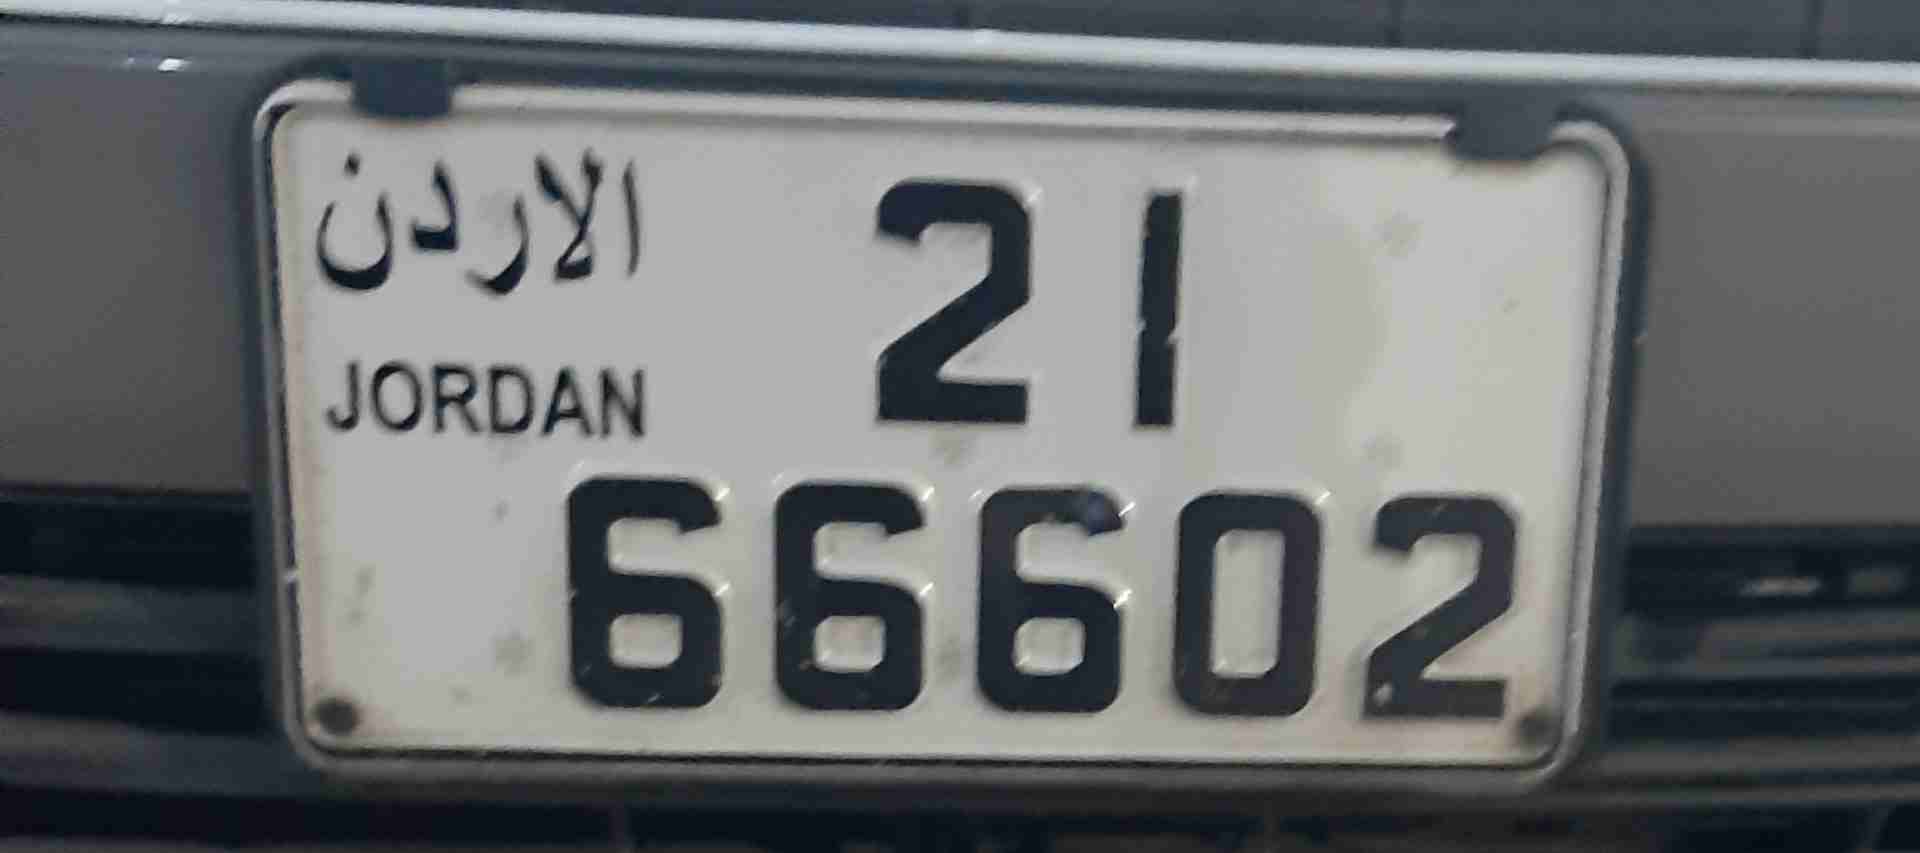 أرقام سيارات مميّزة للبيع في لبنان. واتسأب على الرقم 0096170362405-  رقم مميز للبيع لا تنسَ...